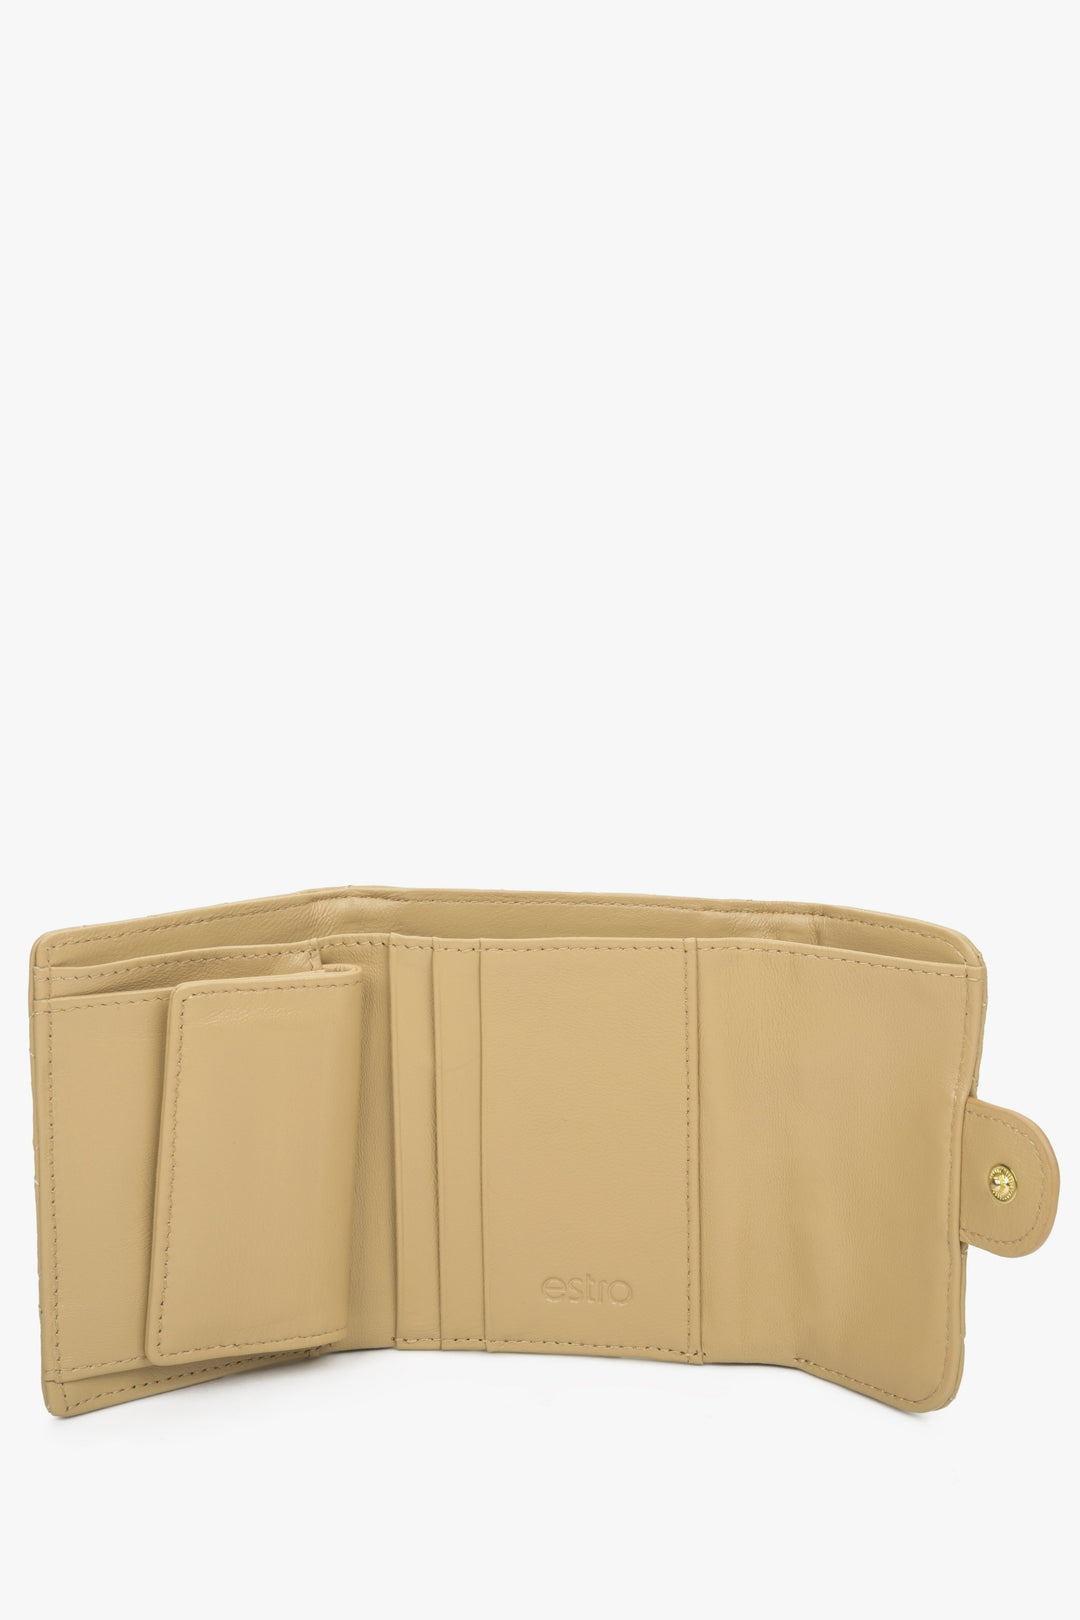 A beige handy women's wallet with Estro embossing - interior.